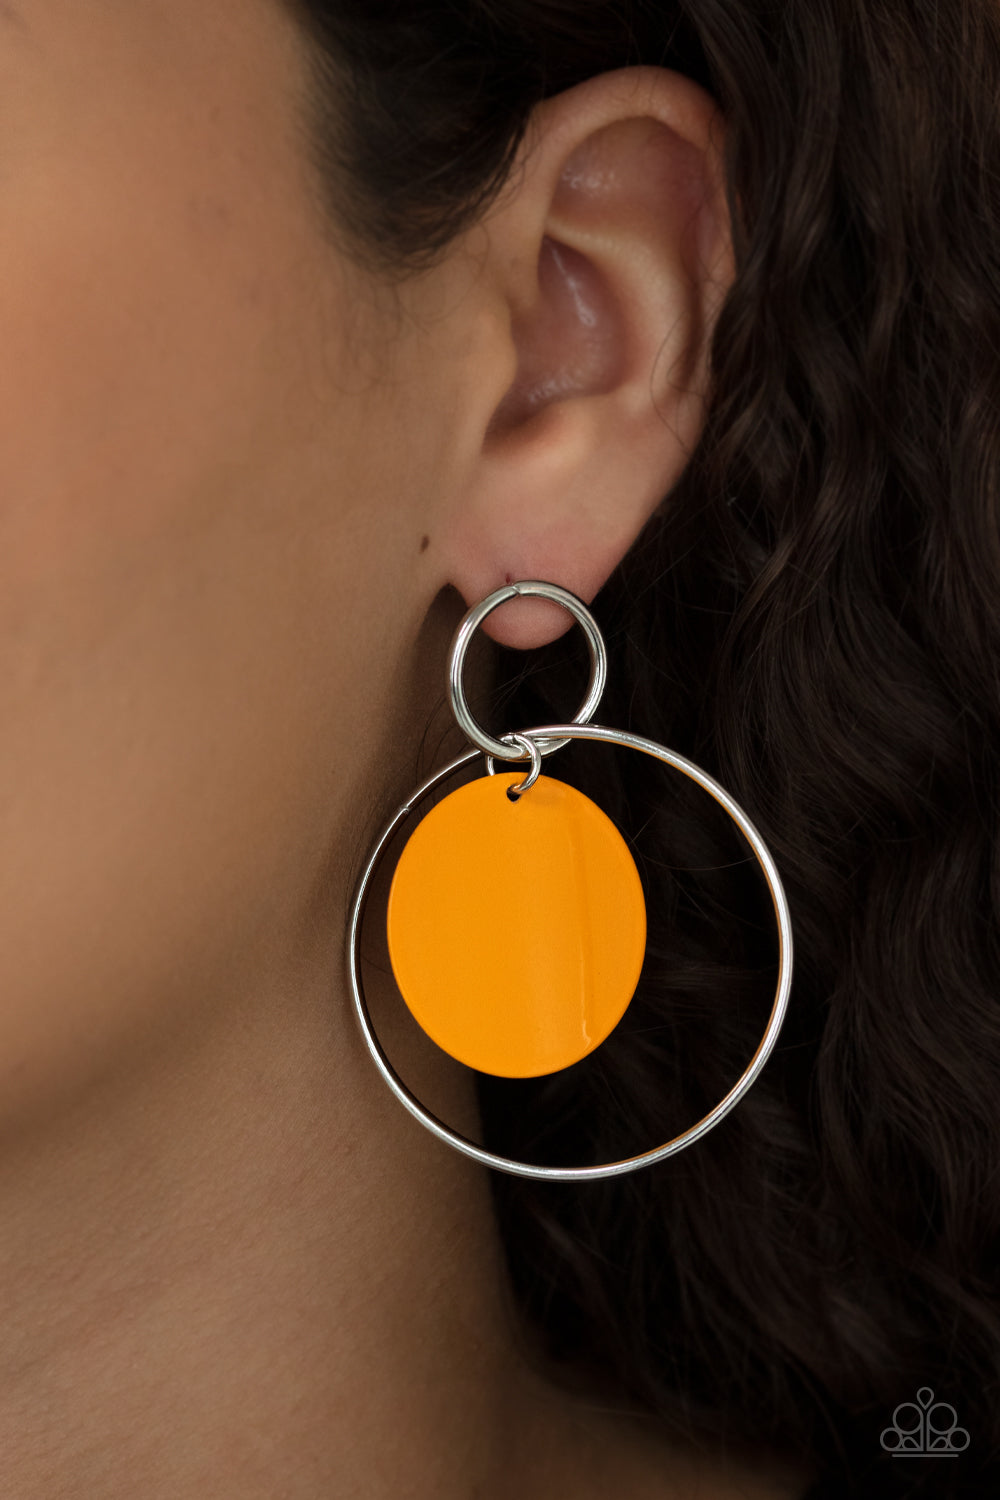 POP, Look, and Listen - Orange - VJ Bedazzled Jewelry